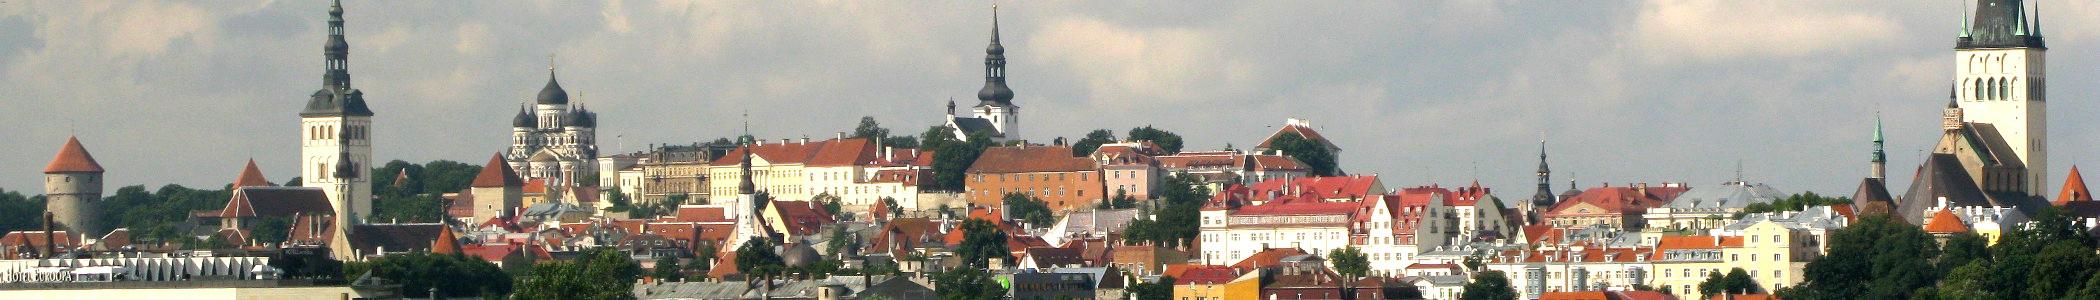 Banner image for Tallinn on GigsGuide